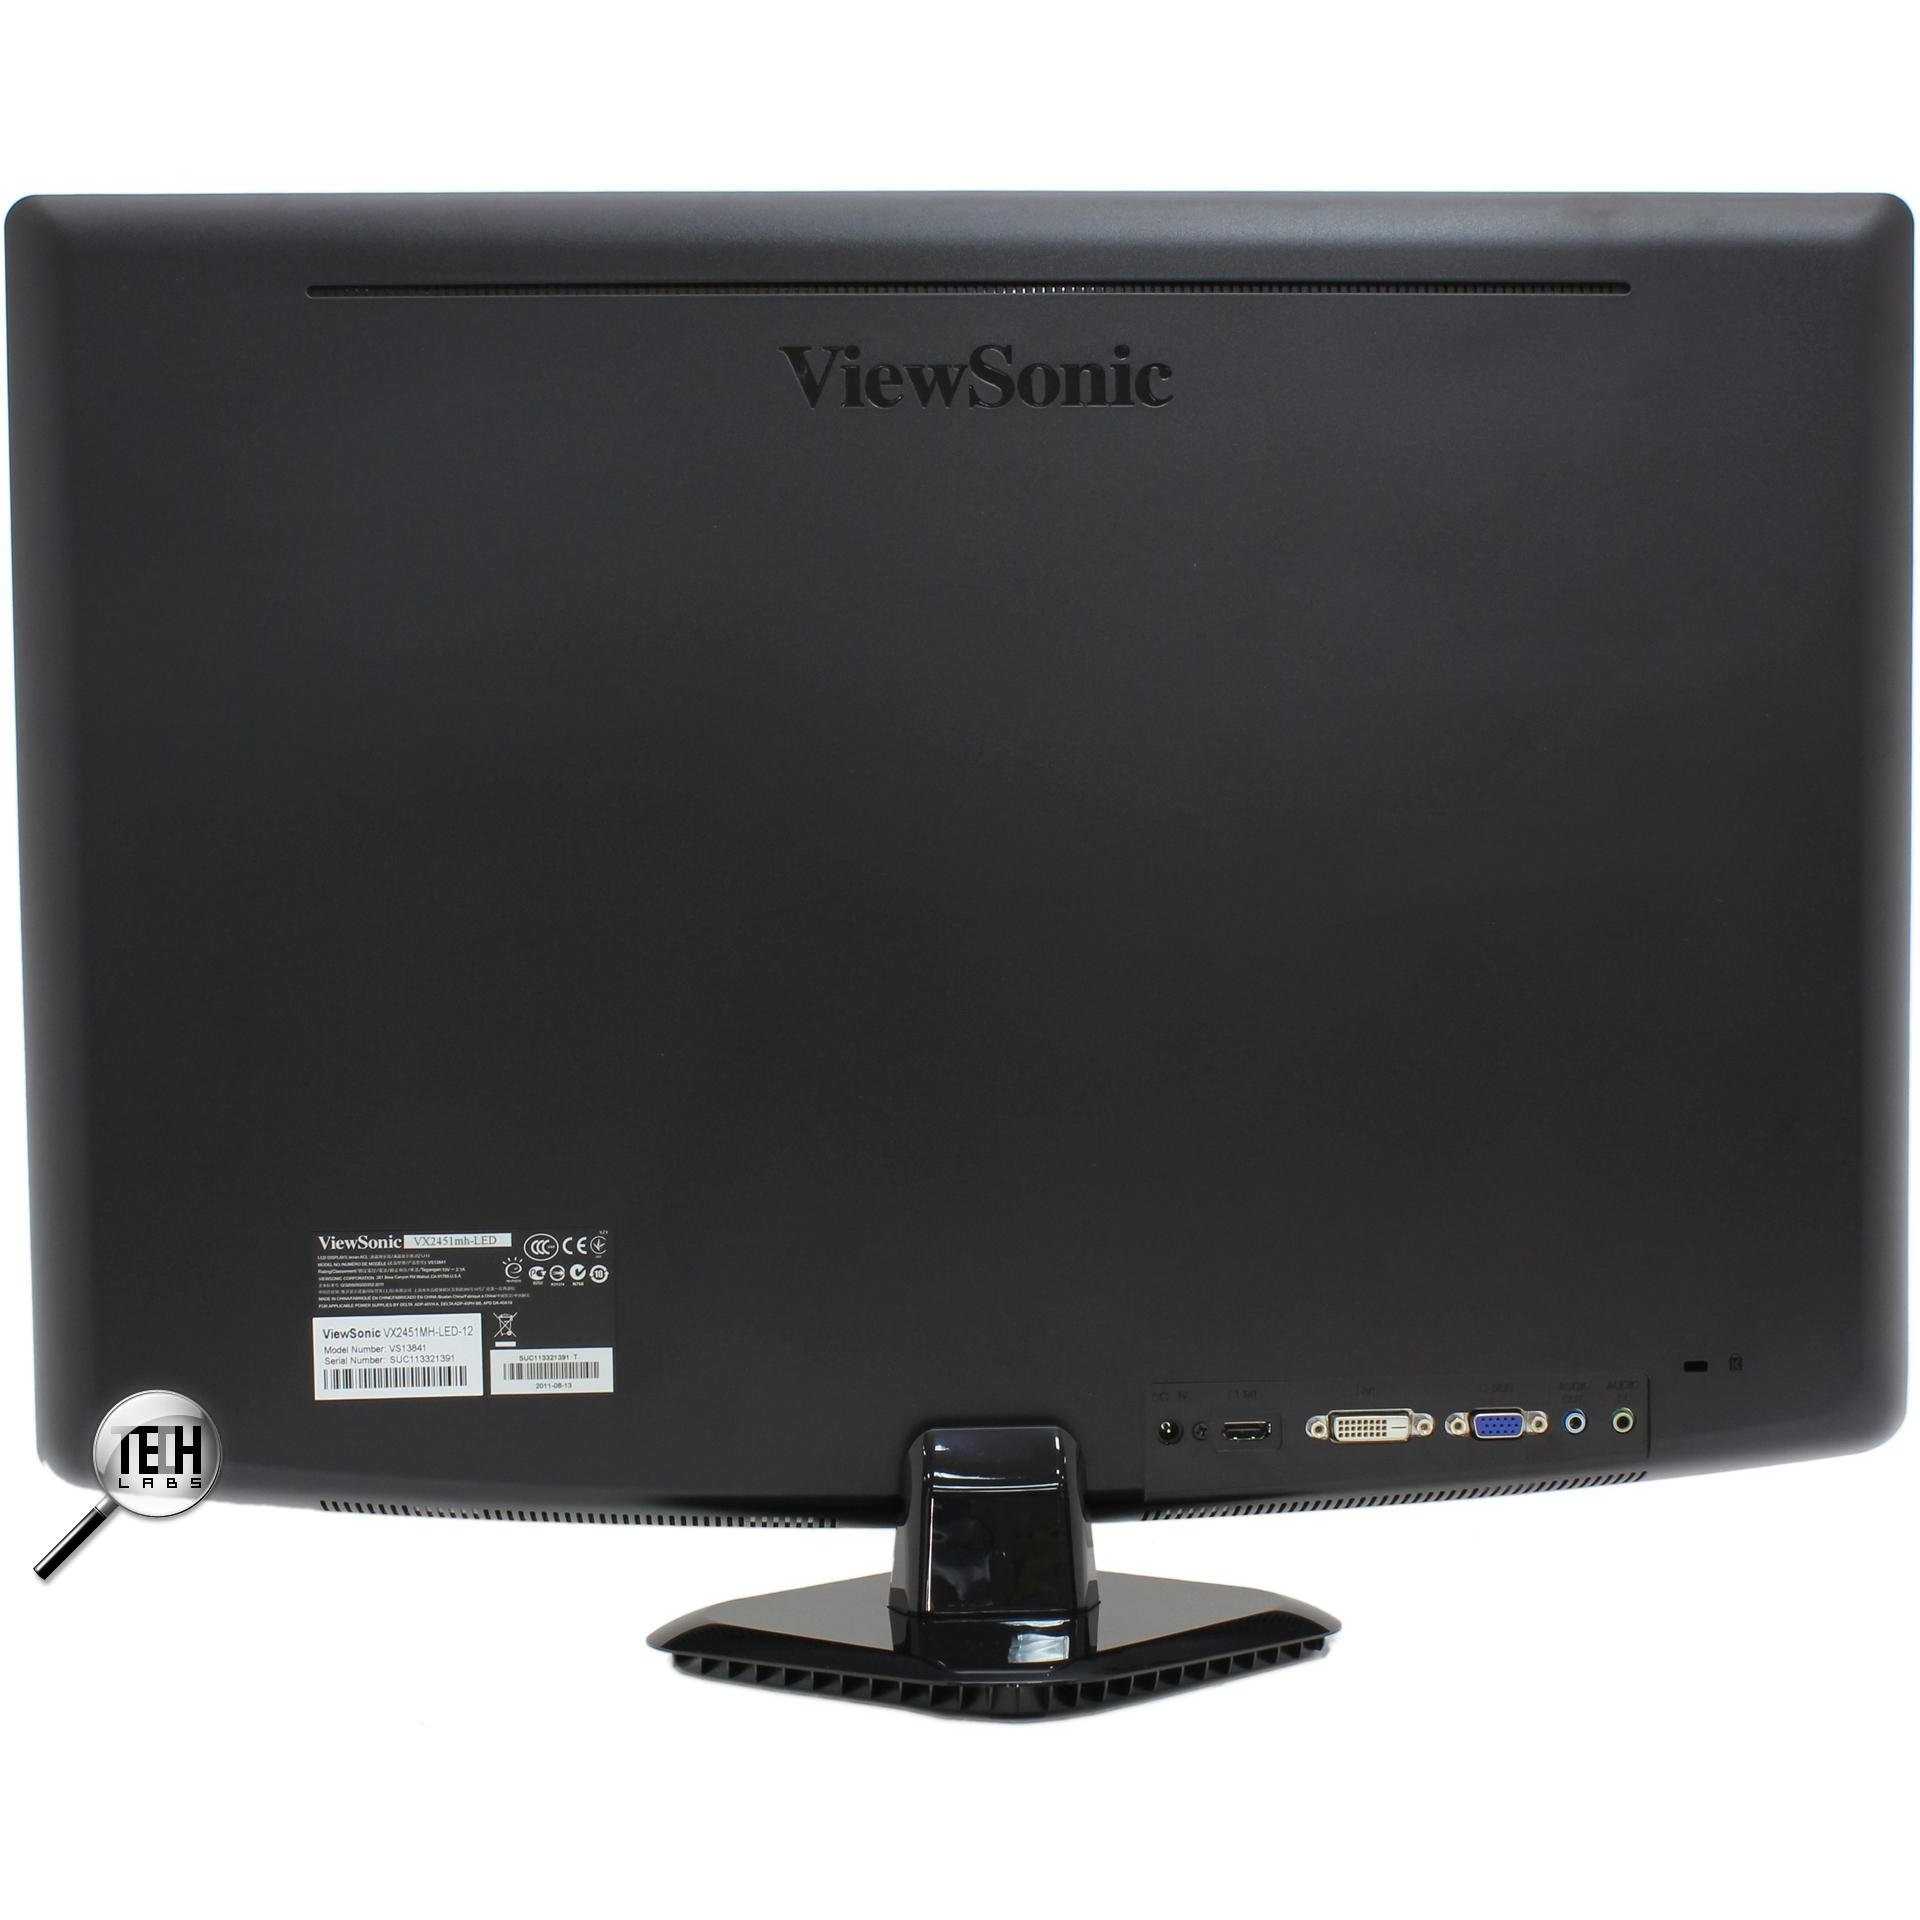 Viewsonic vx2252mh (черный) - купить , скидки, цена, отзывы, обзор, характеристики - мониторы